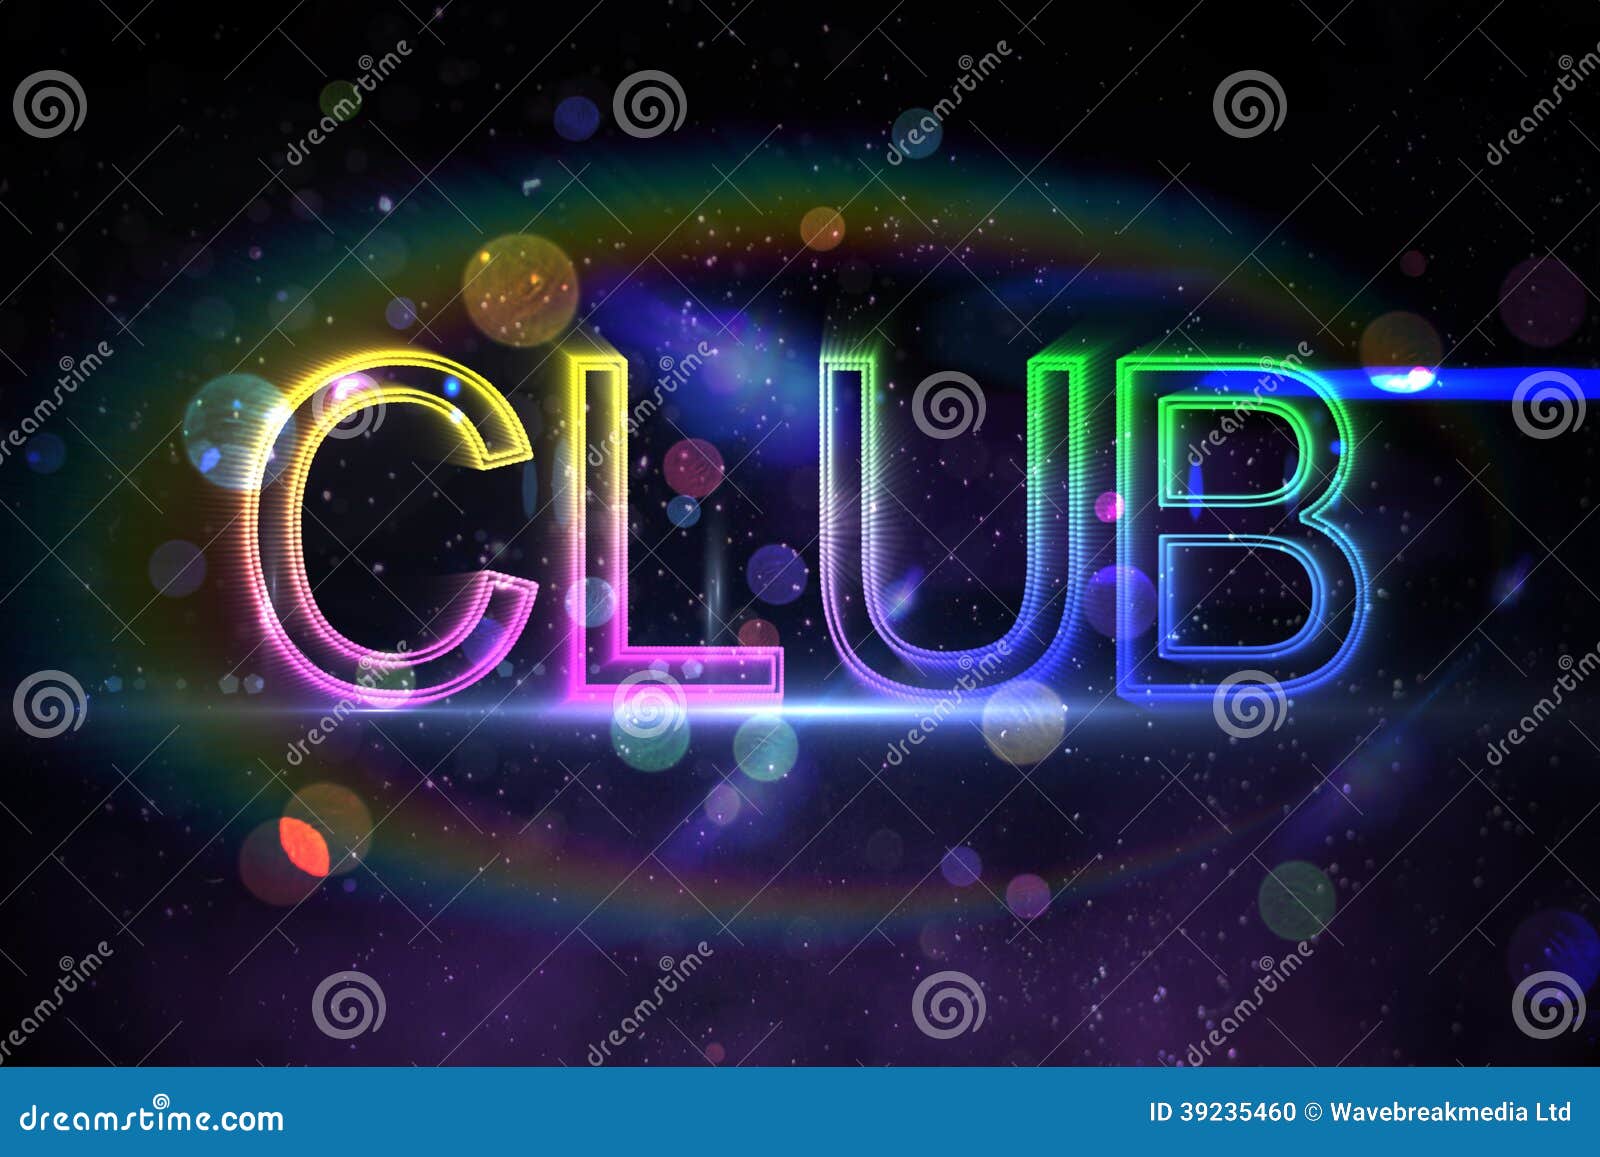 Есть слово клуб. Диджитал клуб. Digital Club. Слово Club. Клуб слово.